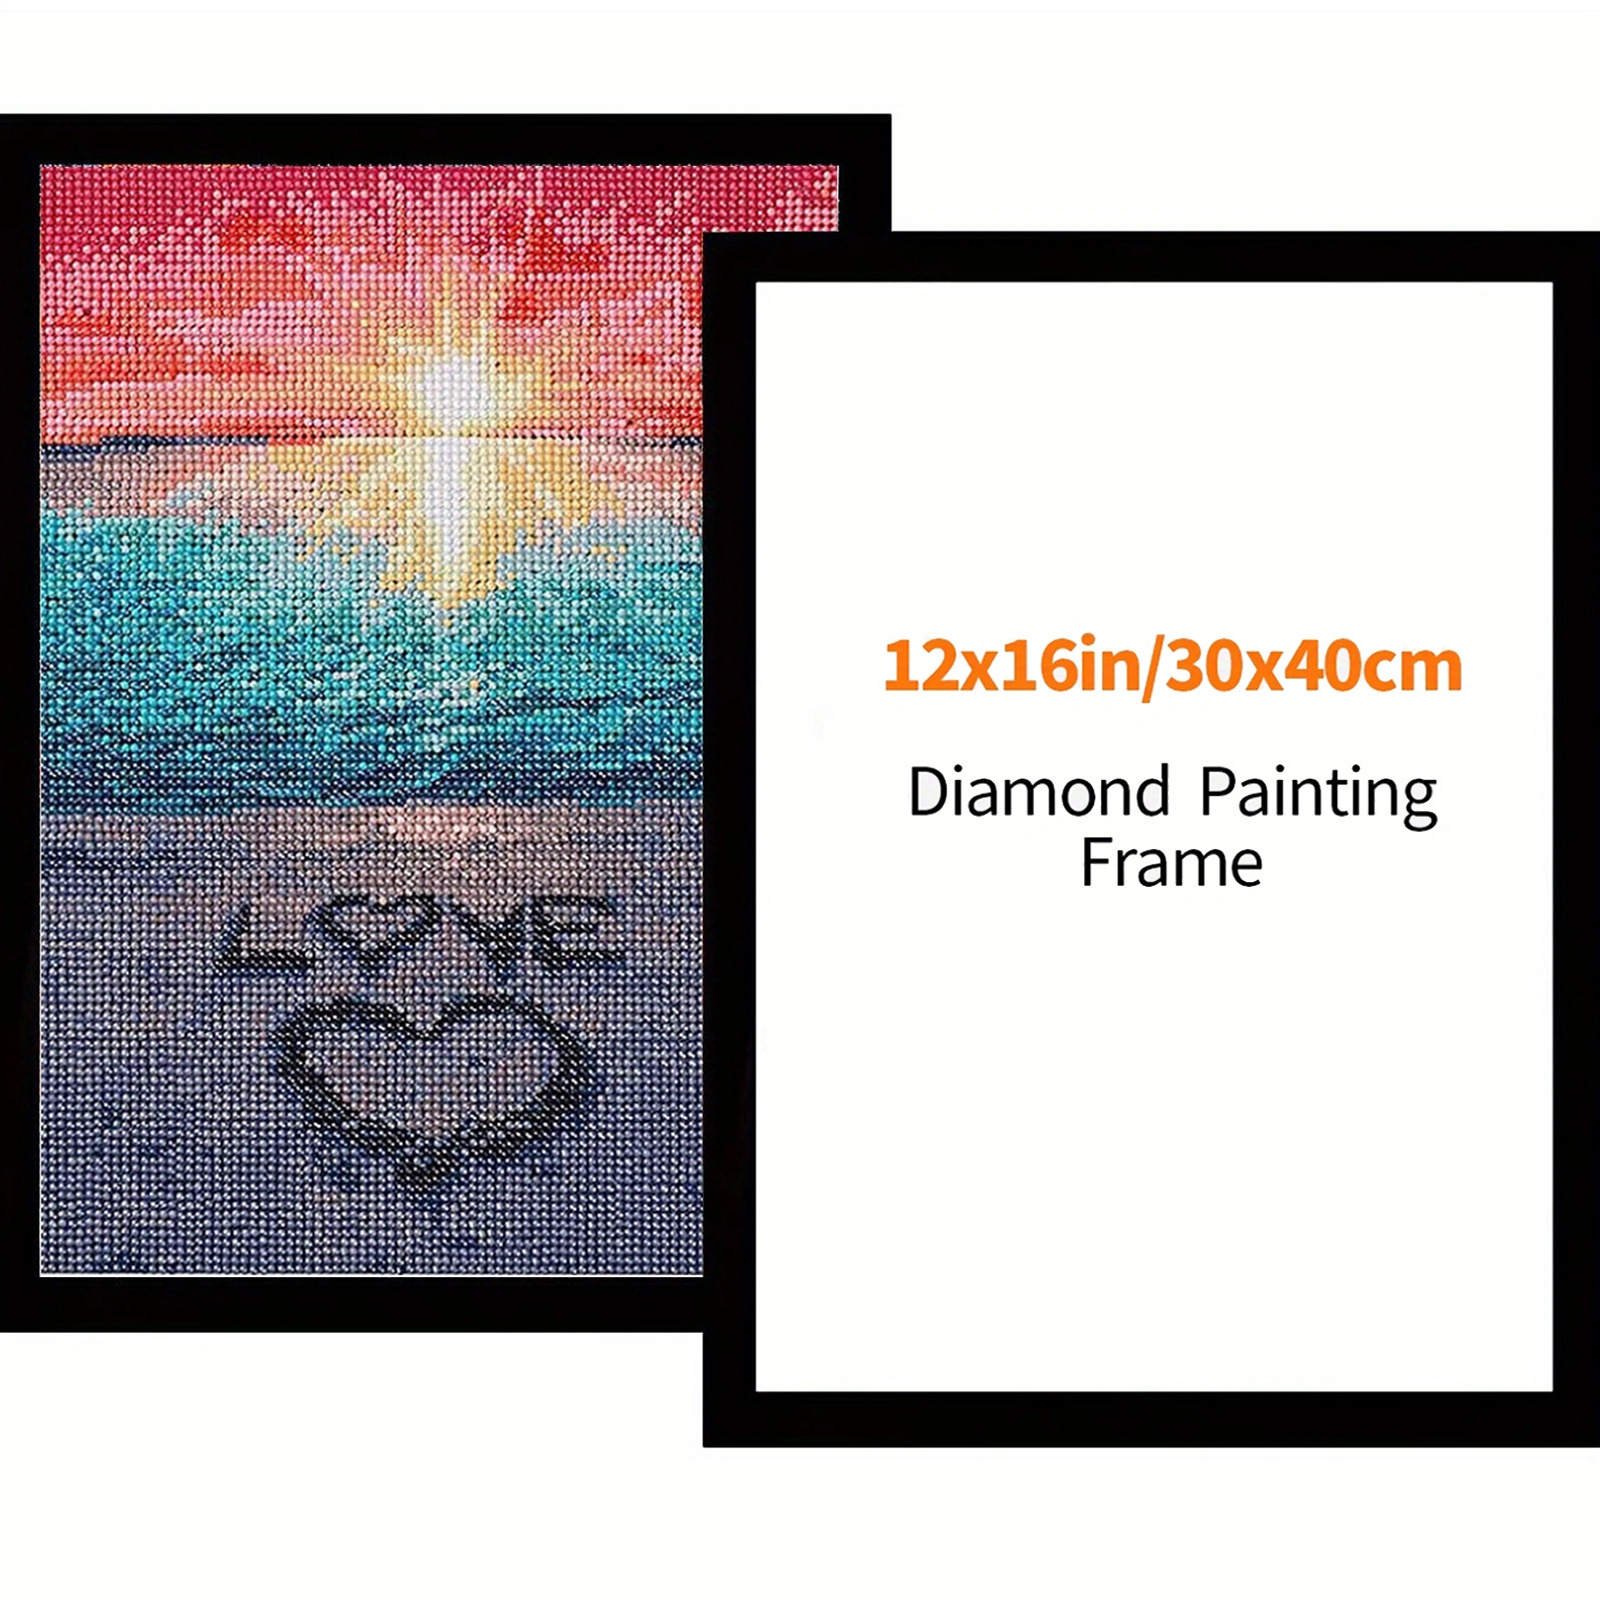 New 2PCS Diamond Painting Frames Magnetic Frames Fridge Magnet